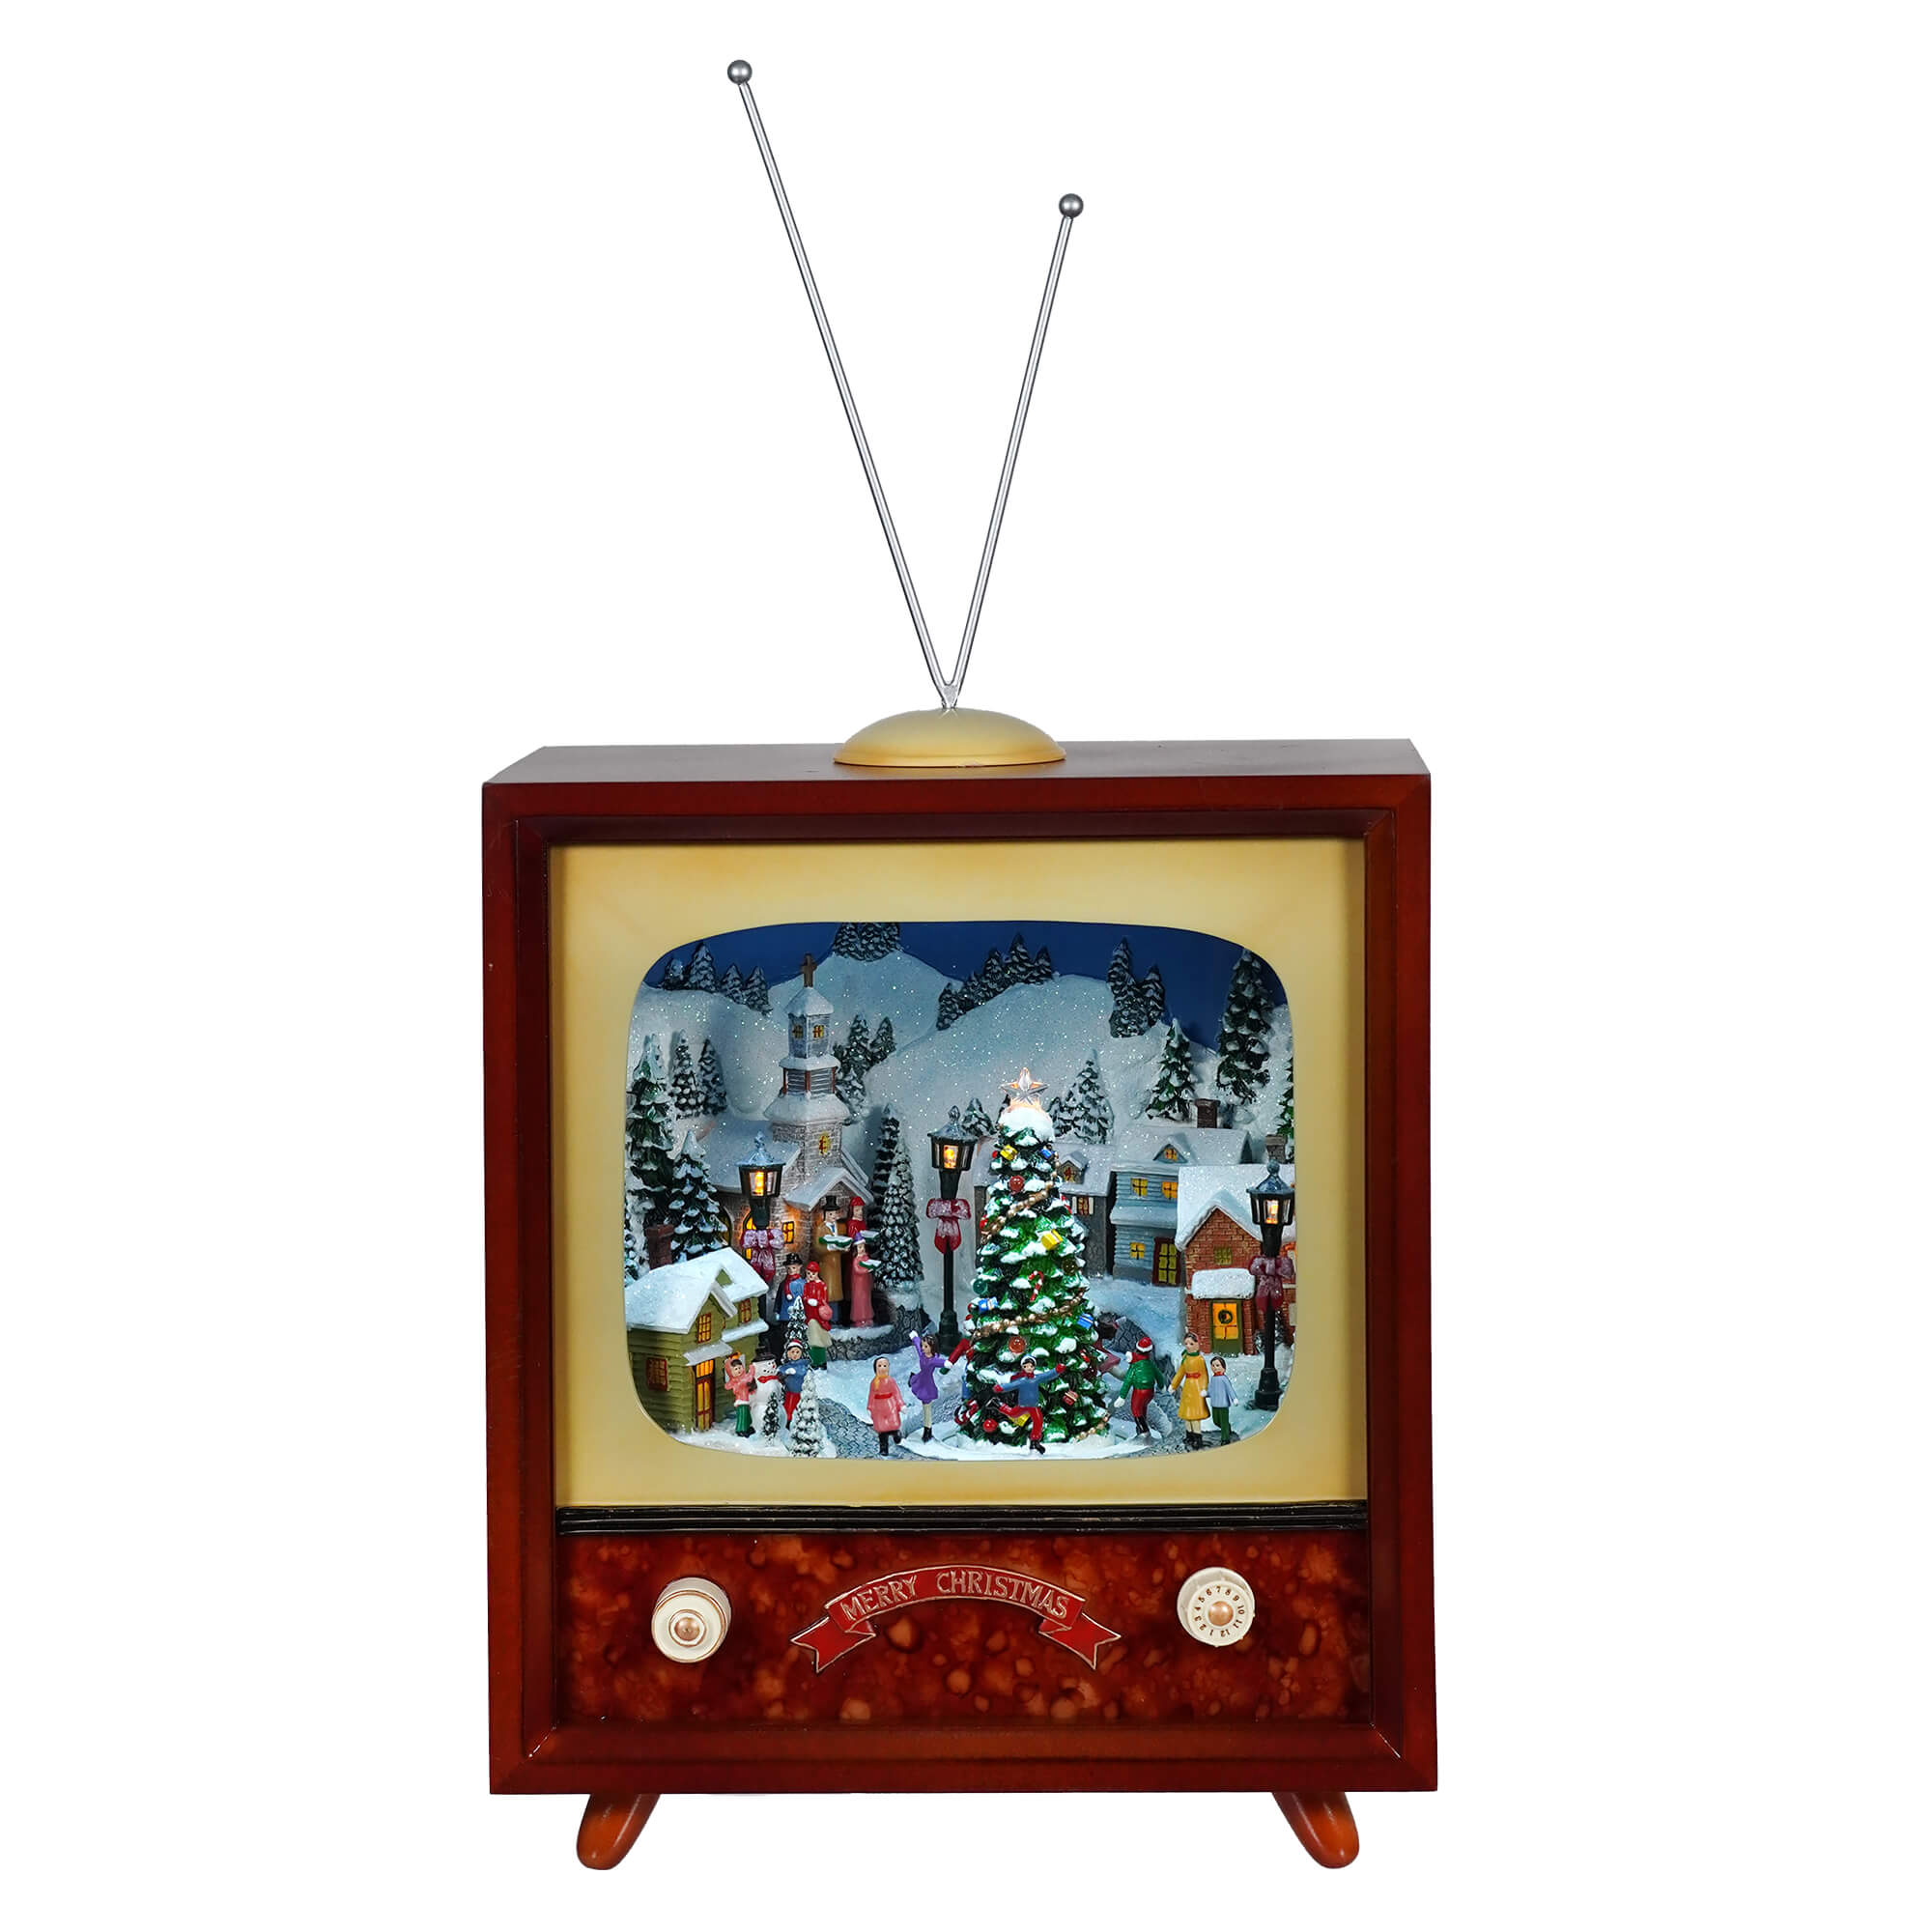 Lighted Animated & Musical Christmas TV